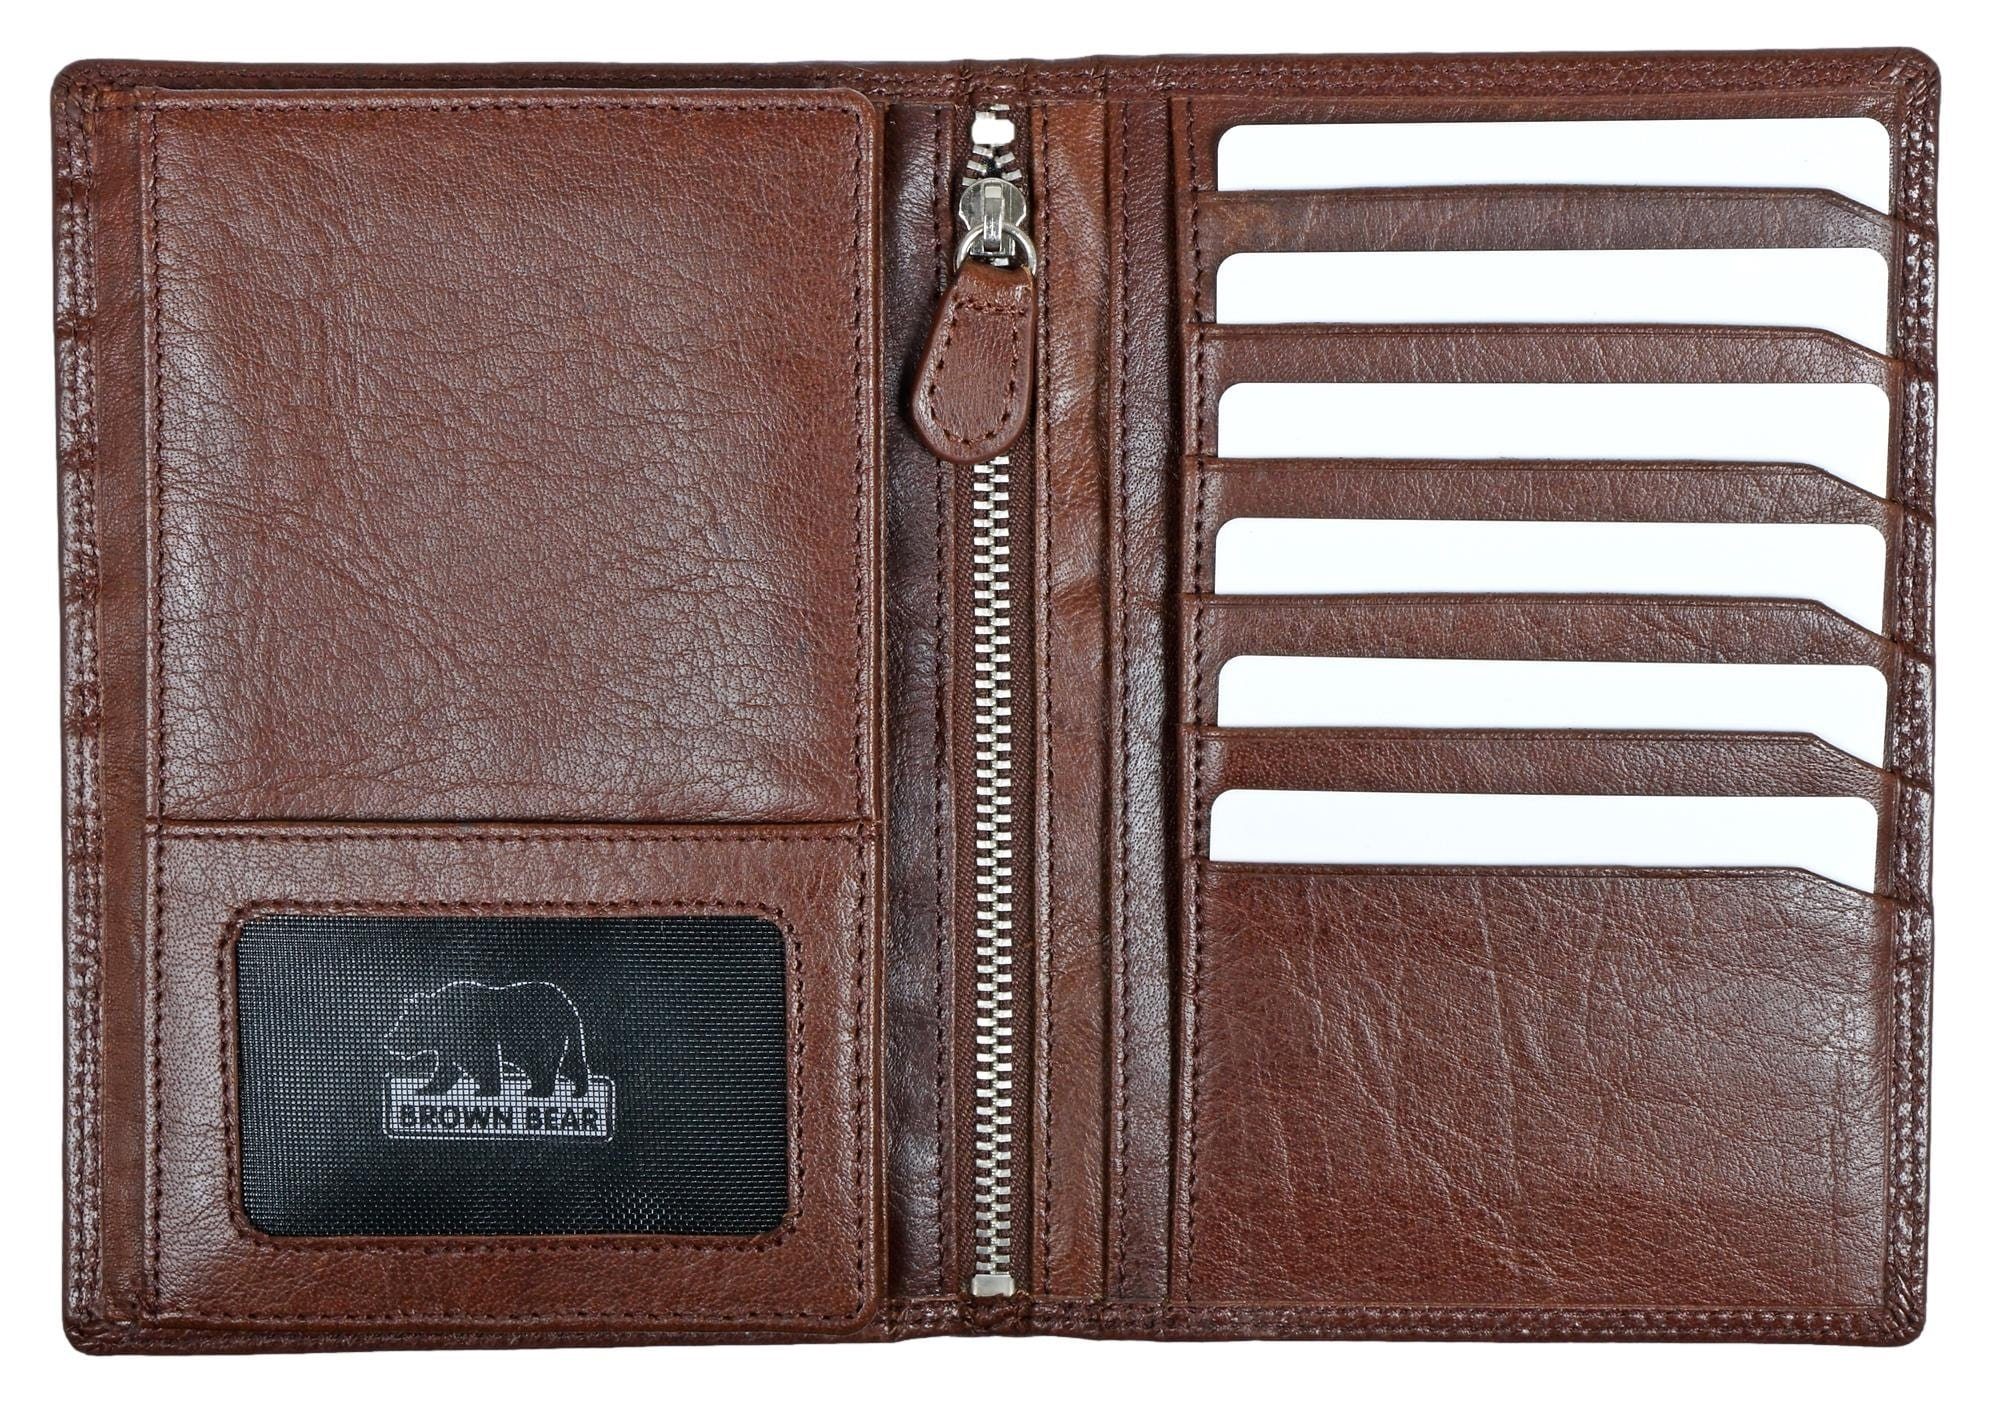 Brown Bear Brieftasche Classic 8013 Sichtfächer Kartenfächer Münzfach Braun 5 Braun 13 RFID Echtleder, Schutz Ausweisfächer ohne Toscana